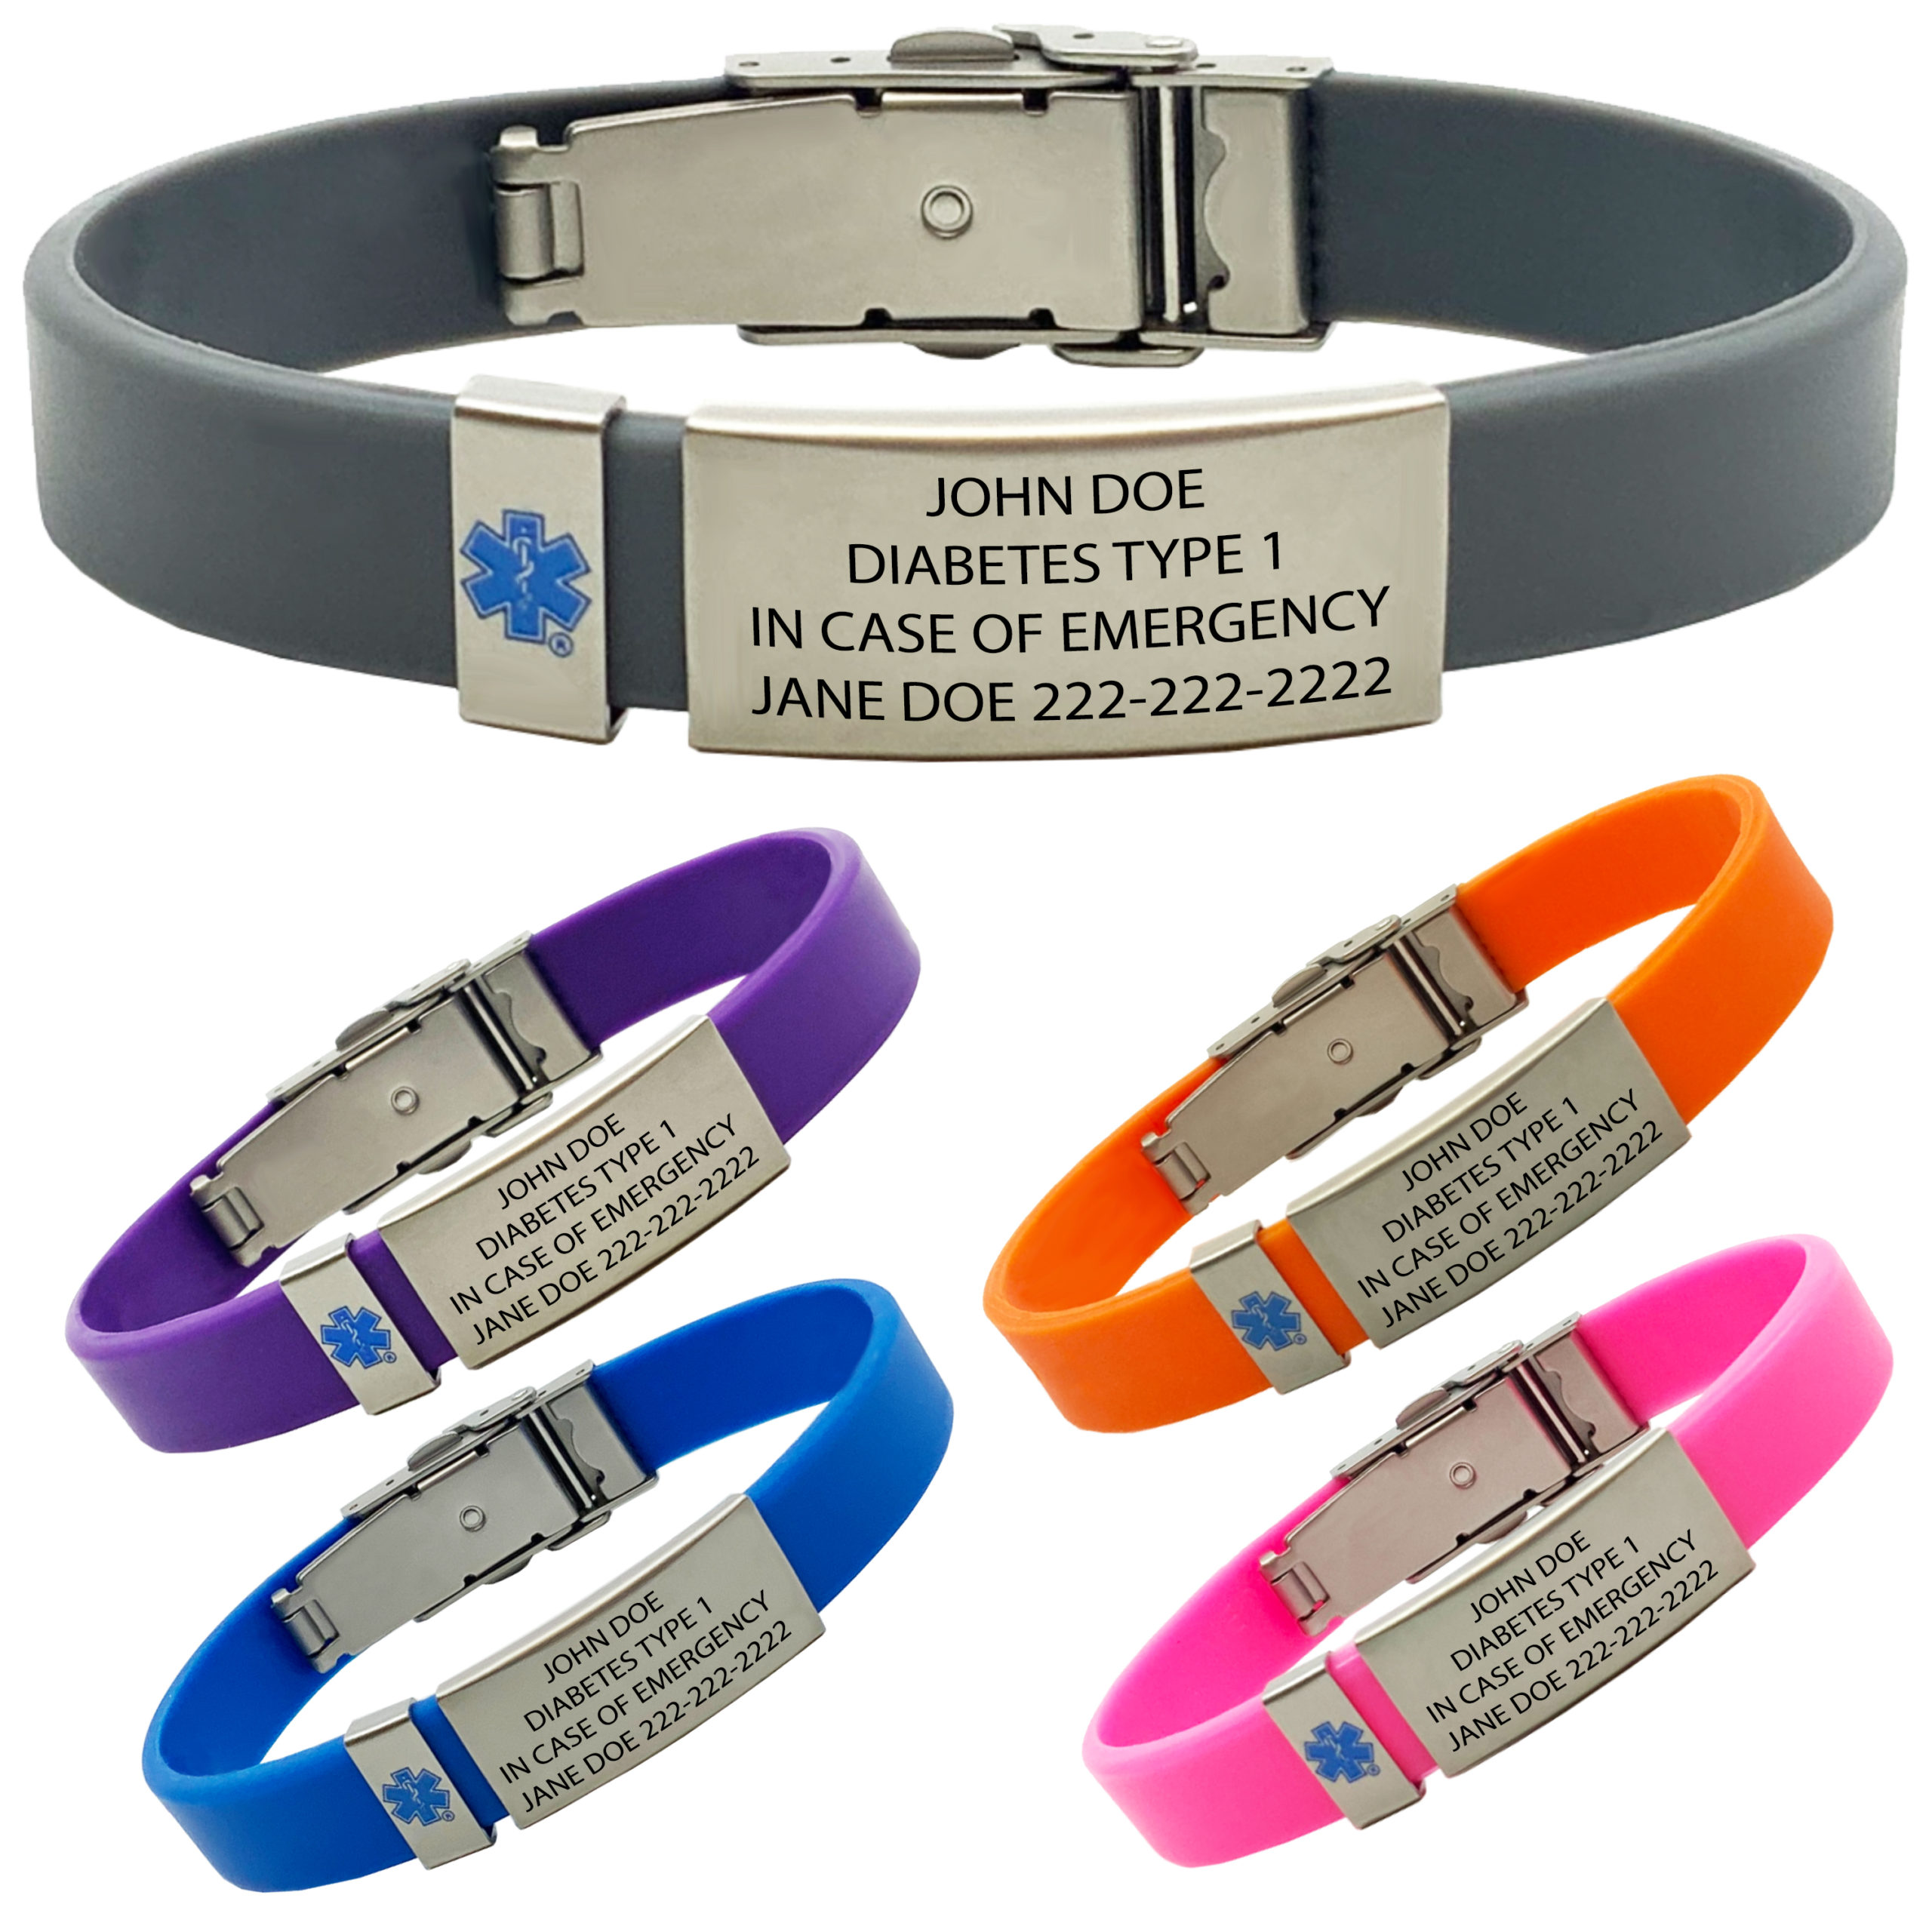 Medical Alert Bracelets, Diabetes Accessories